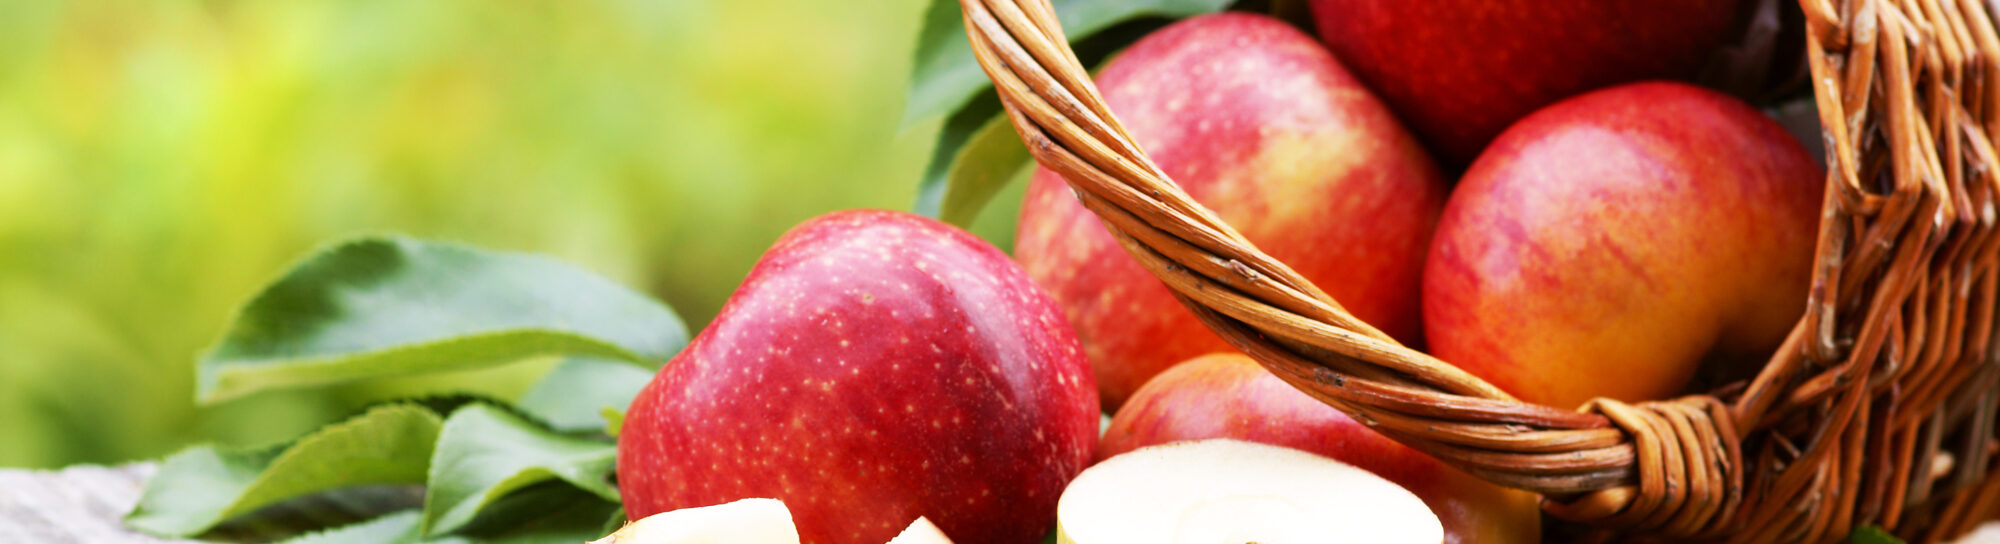 Variétés de pommes populaires en danger